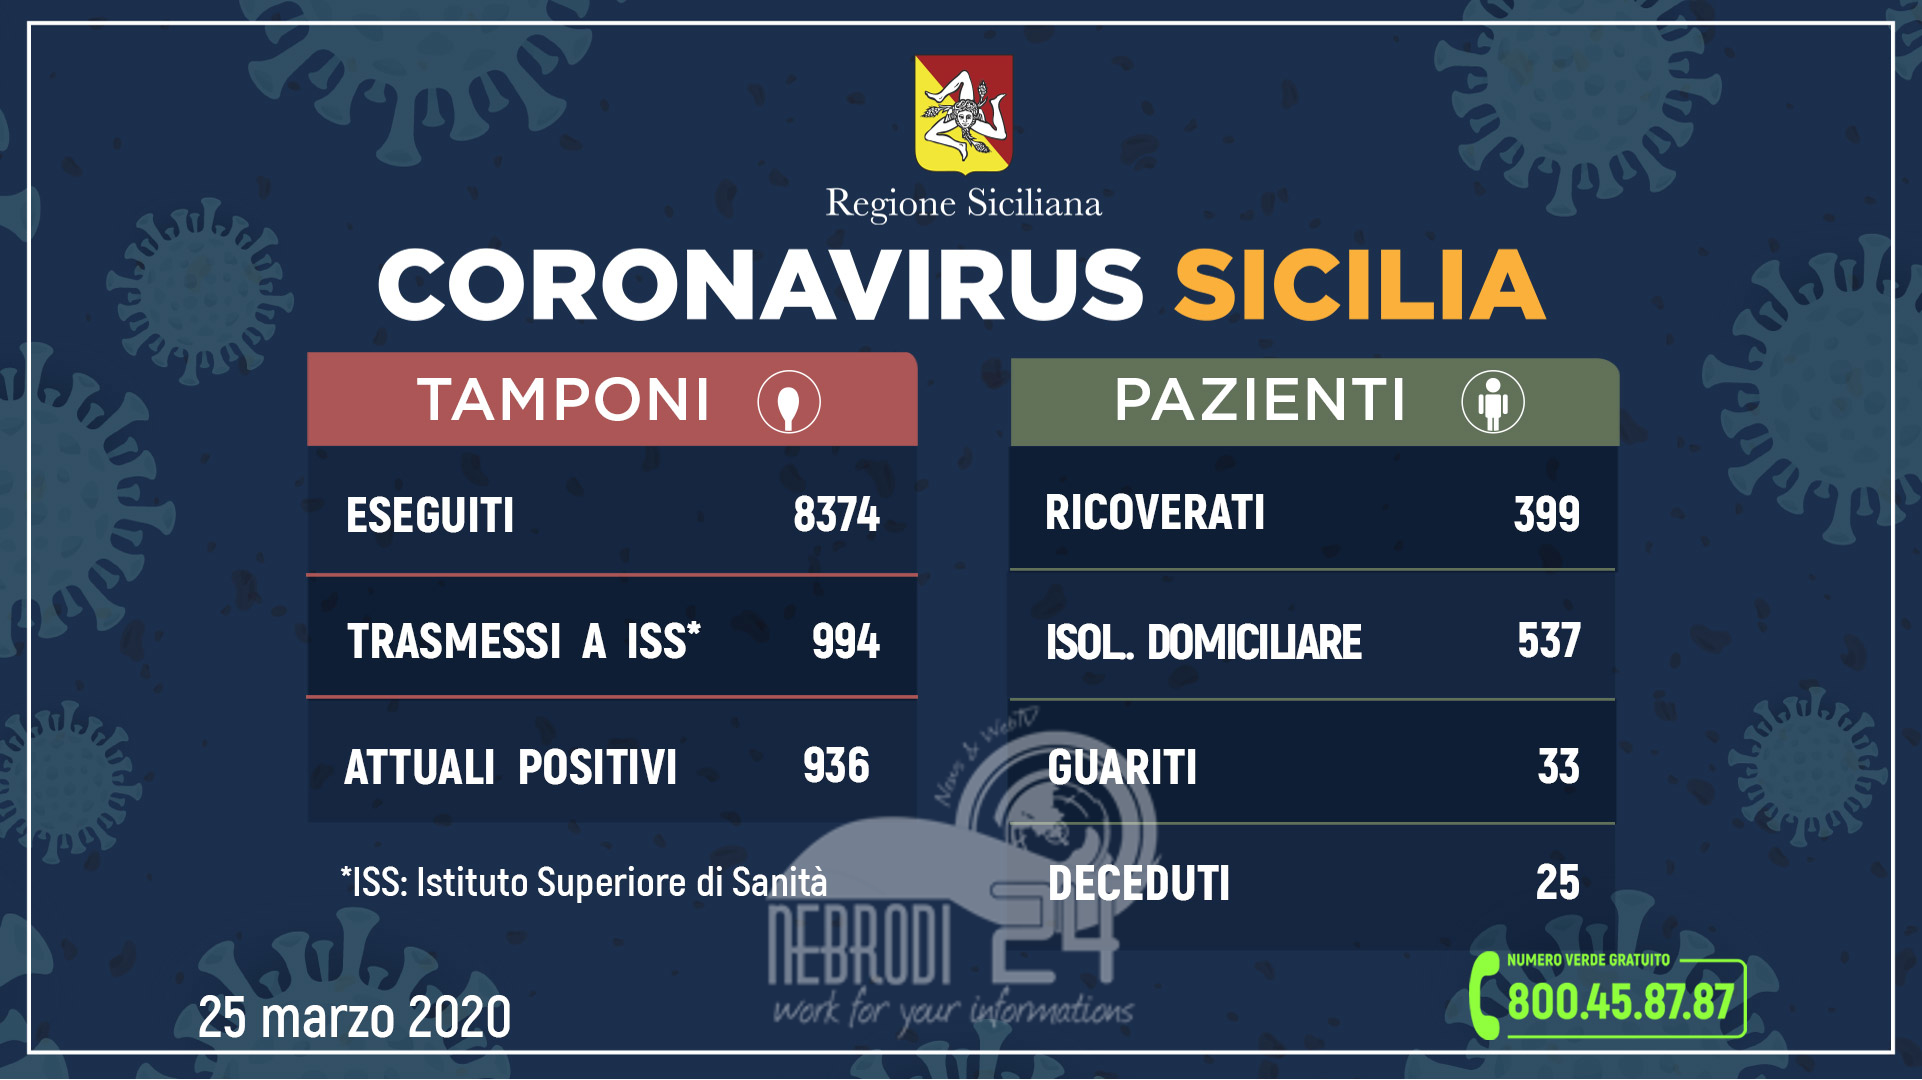 Coronavirus: l’aggiornamento in Sicilia, 936 attuali positivi 33 guariti (+137 rispetto a ieri)